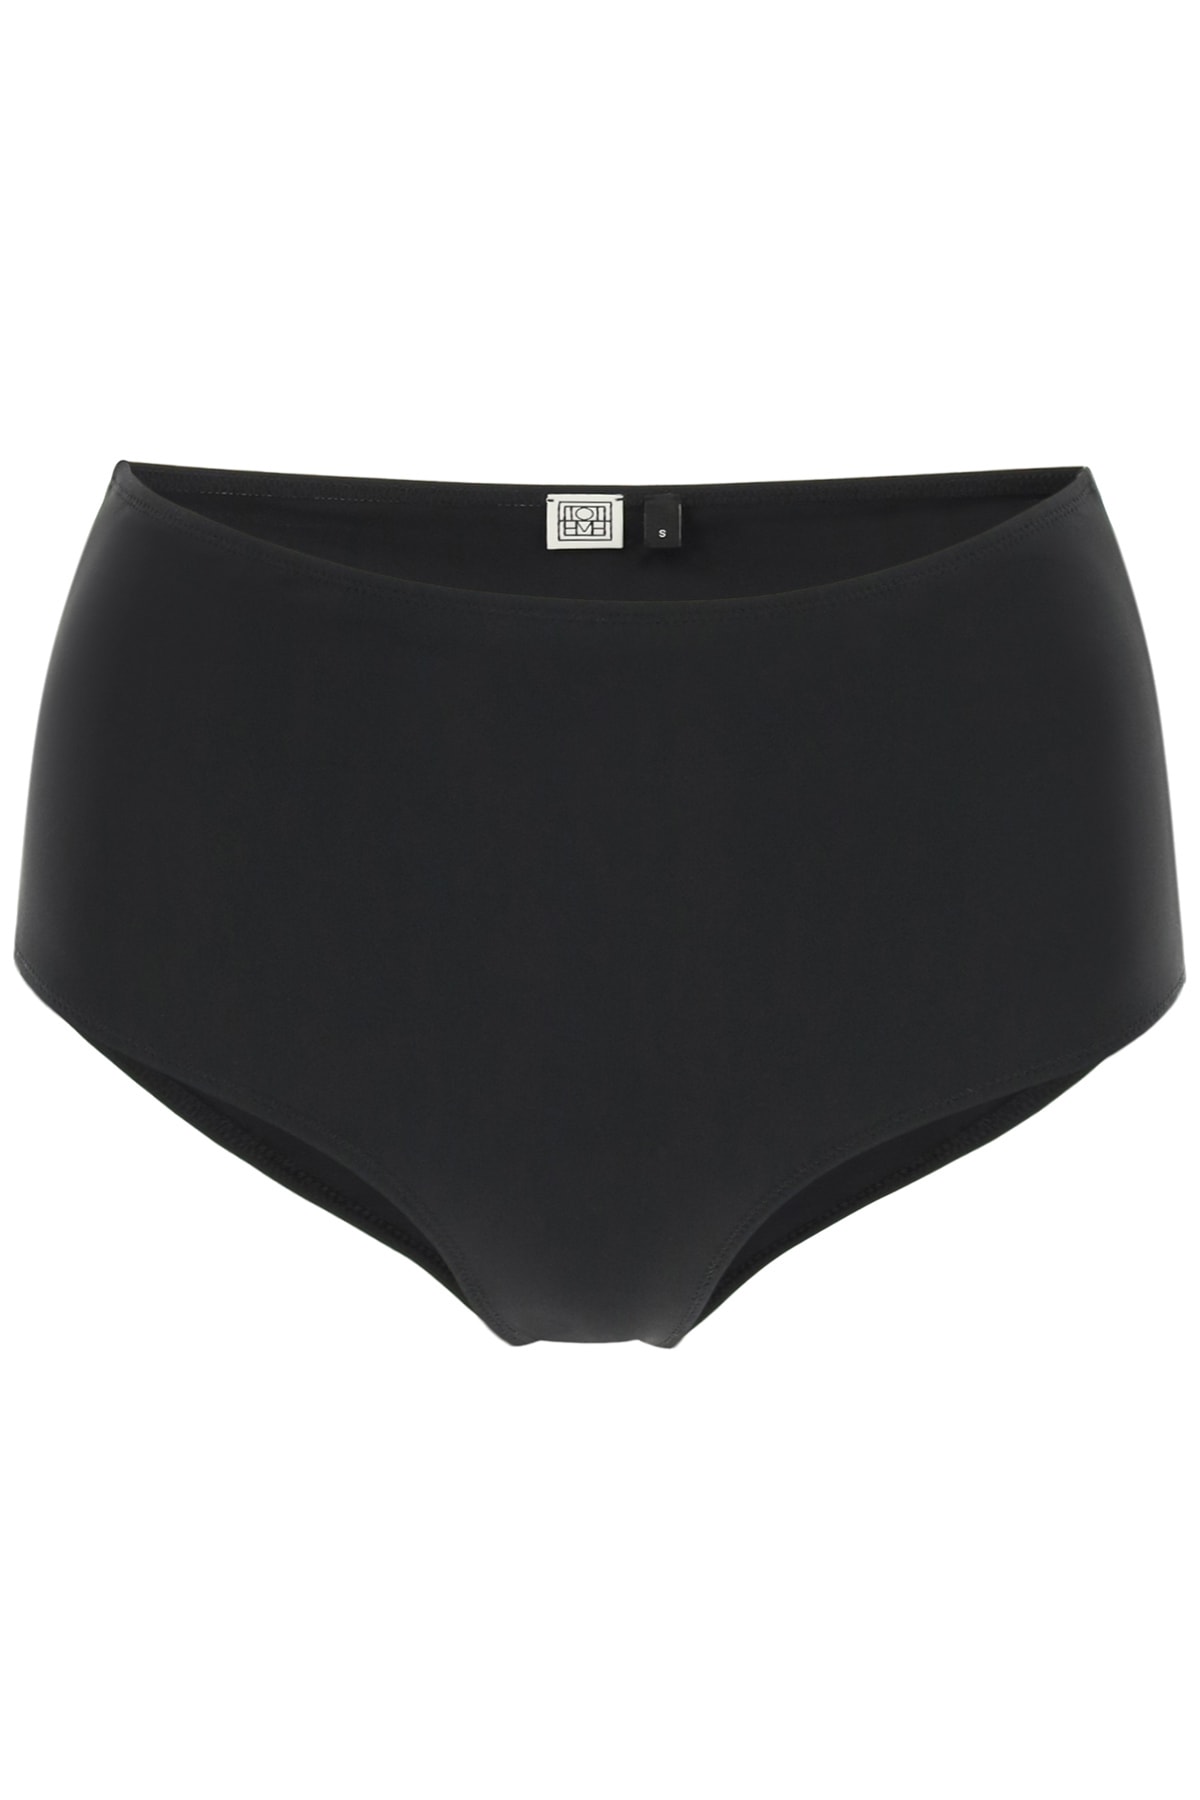 Totême High-waisted Bikini Bottom